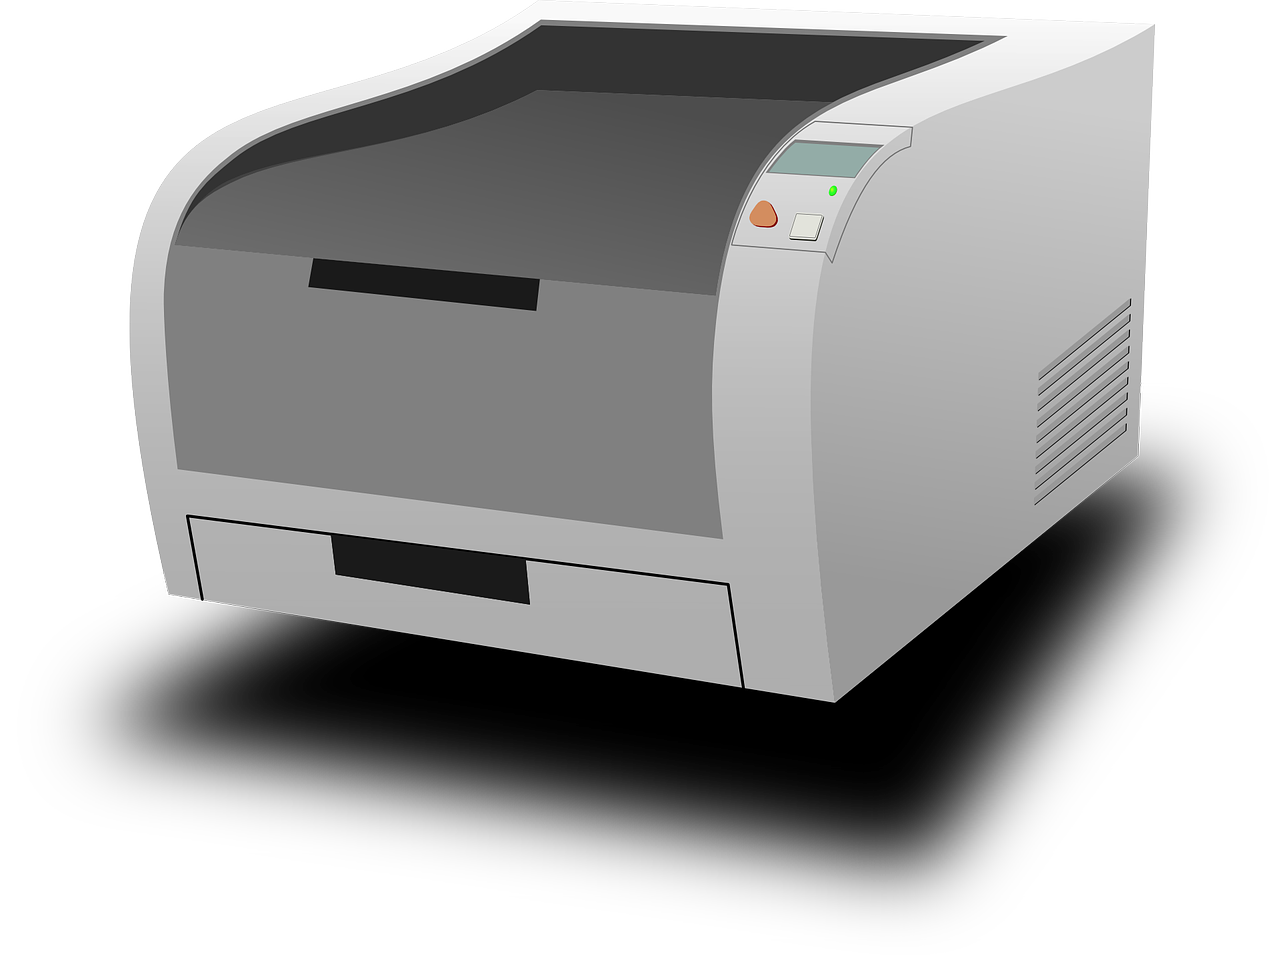 printer laser printer computer free photo